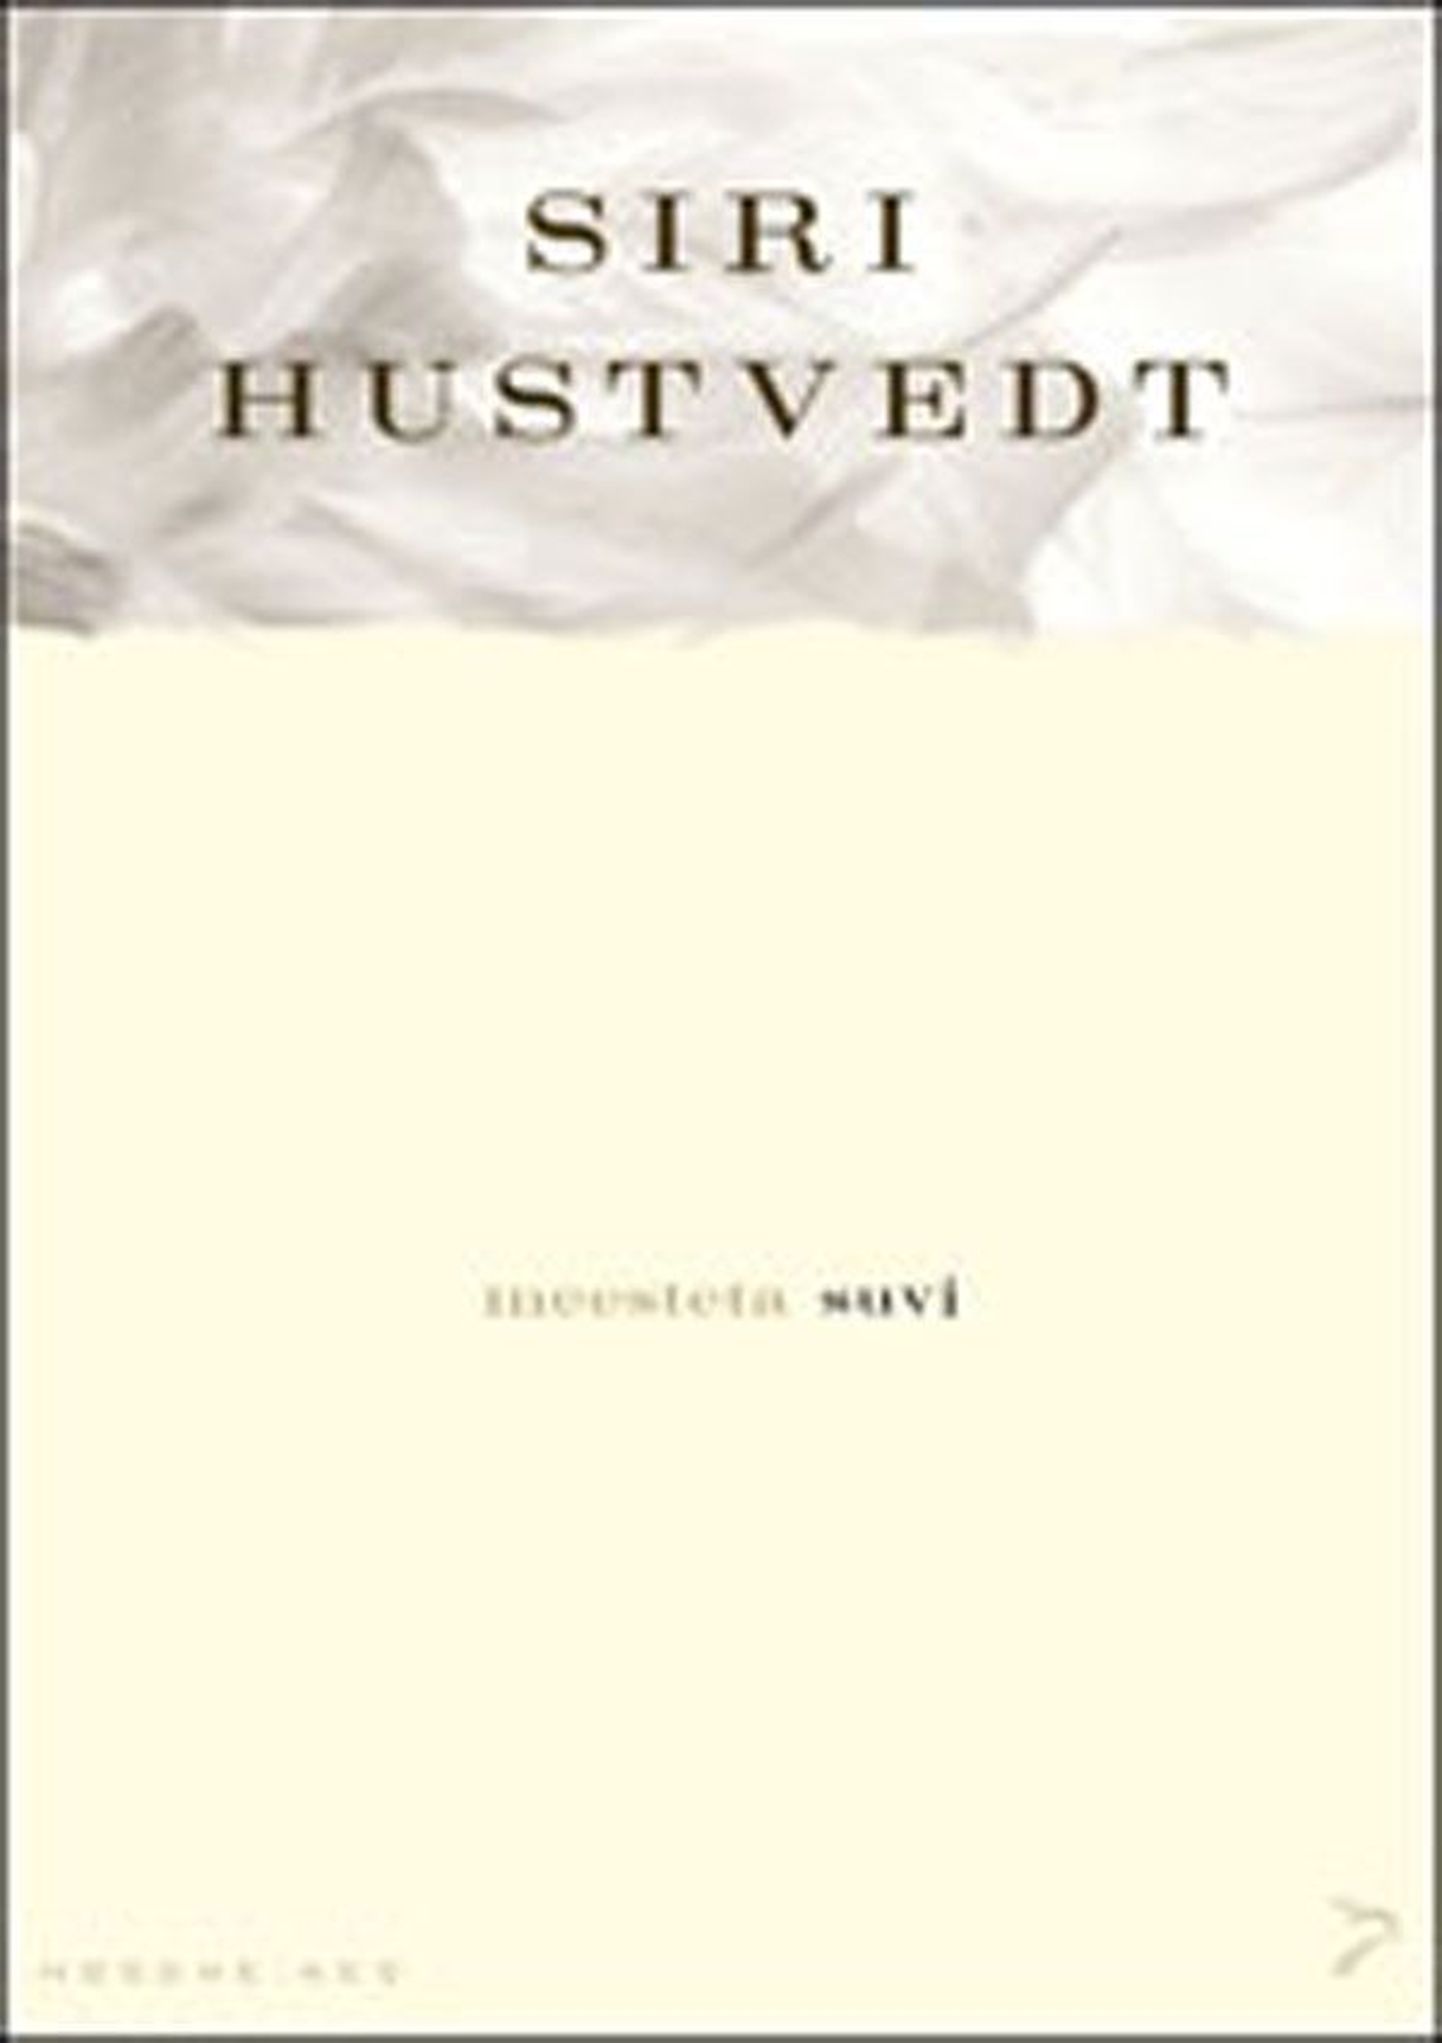 Raamat
Siri Hustvedt
«Meesteta suvi»
Tõlkinud Triin Tael
Sari «Moodne aeg»
Varrak